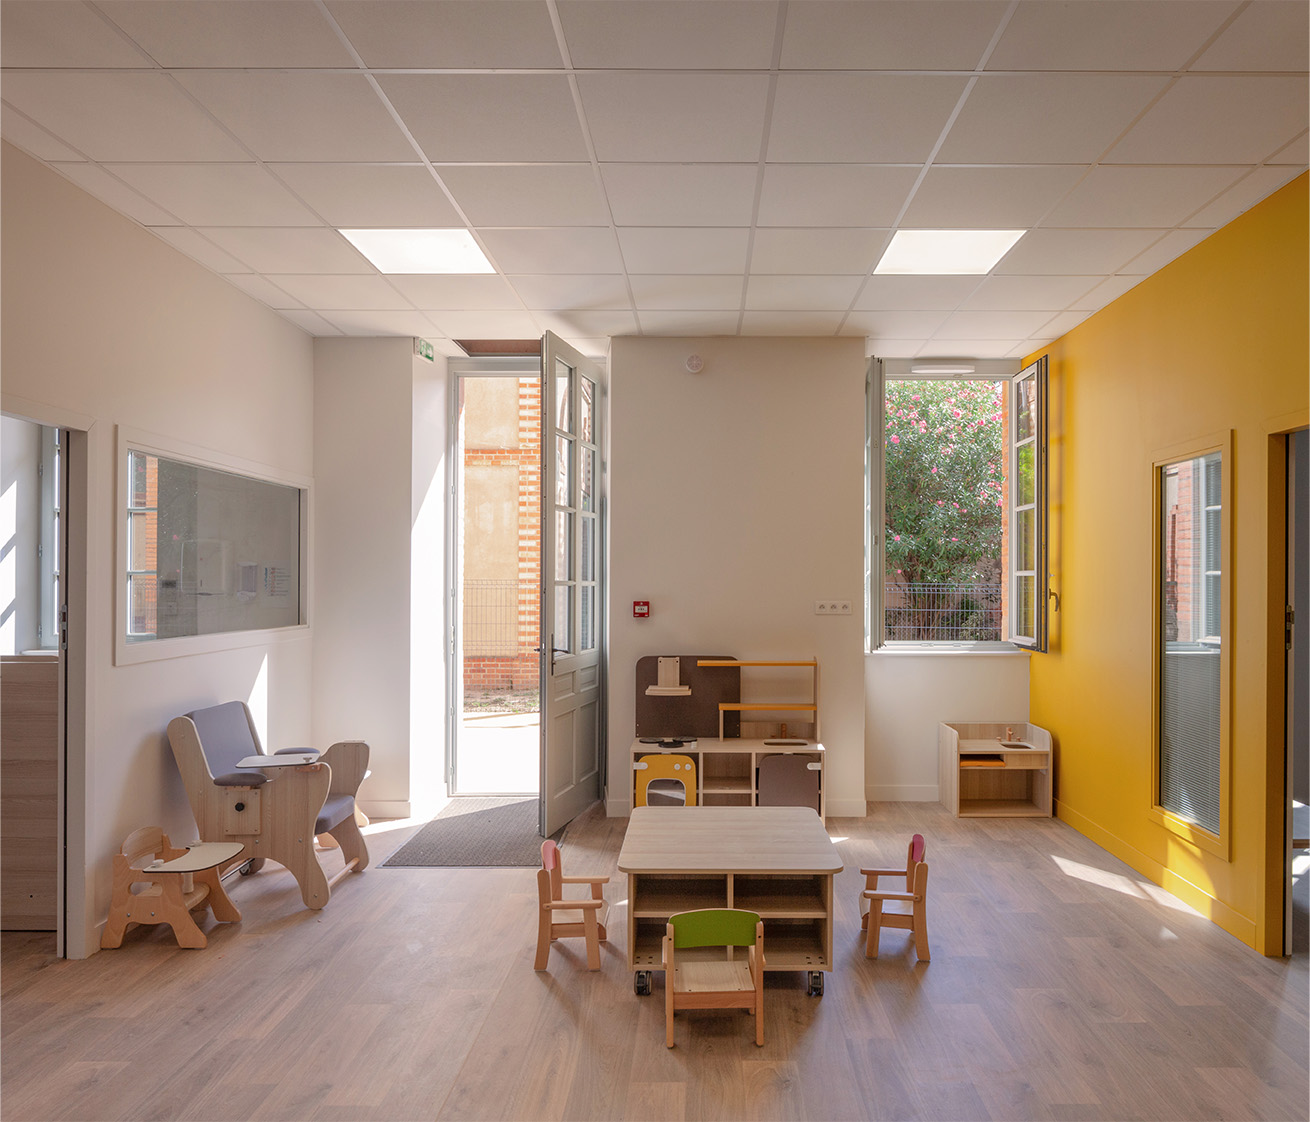 Photographie d'une salle de jeux pour les enfants, une porte d'entrée et fenêtre donnent sur une cour, de petits mobiliers en bois attendent d'être découvert, sol en bois et mur blanc avec un pan en jaune orangé